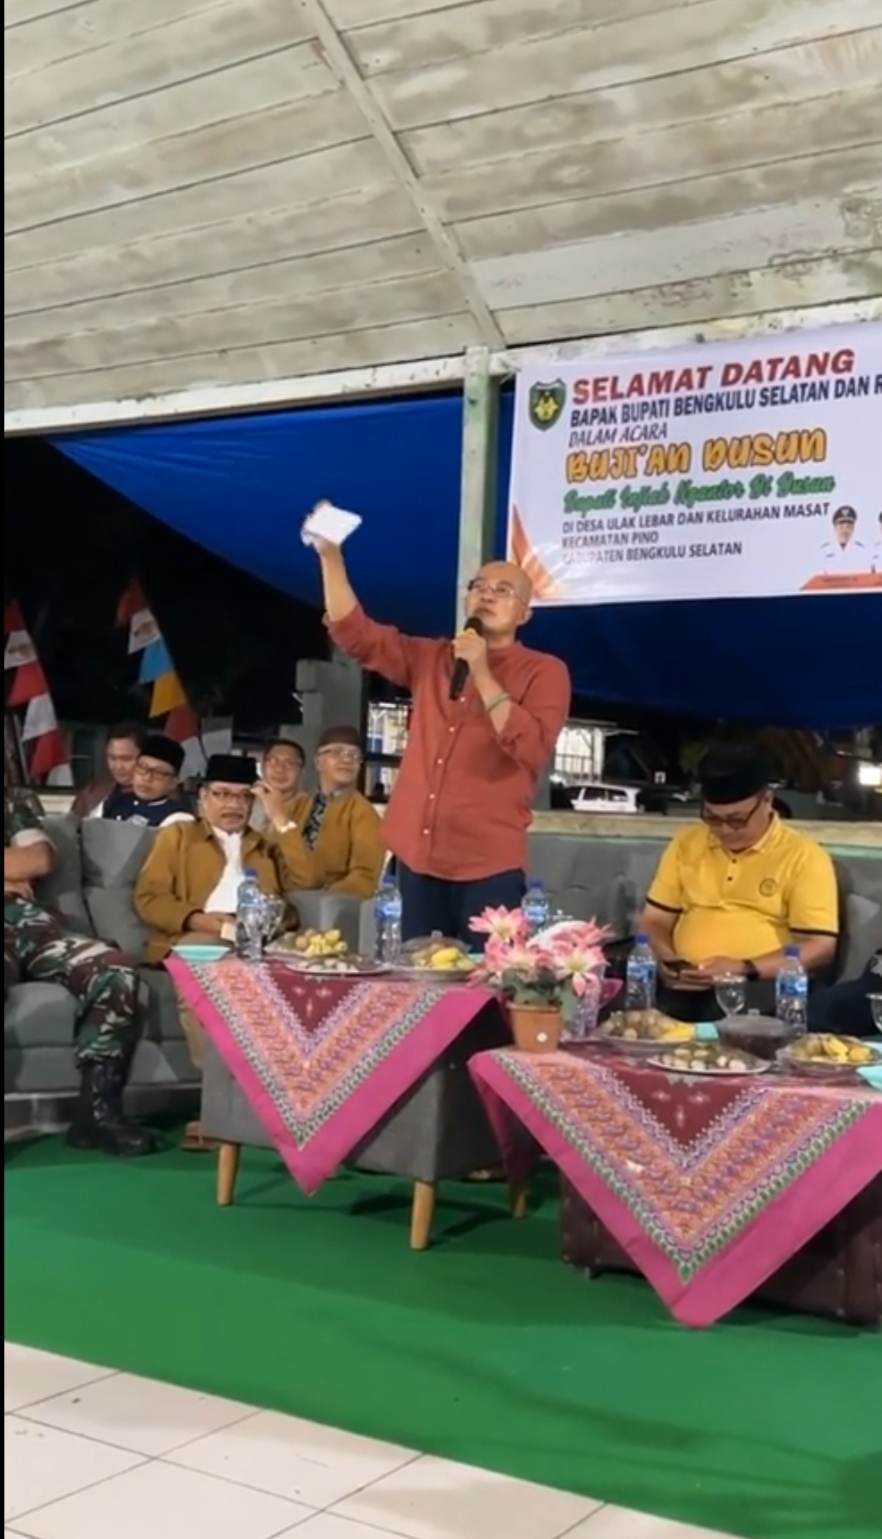  Bupati Bengkulu Selatan Pastikan Program Buji'an Dusun Berlanjut